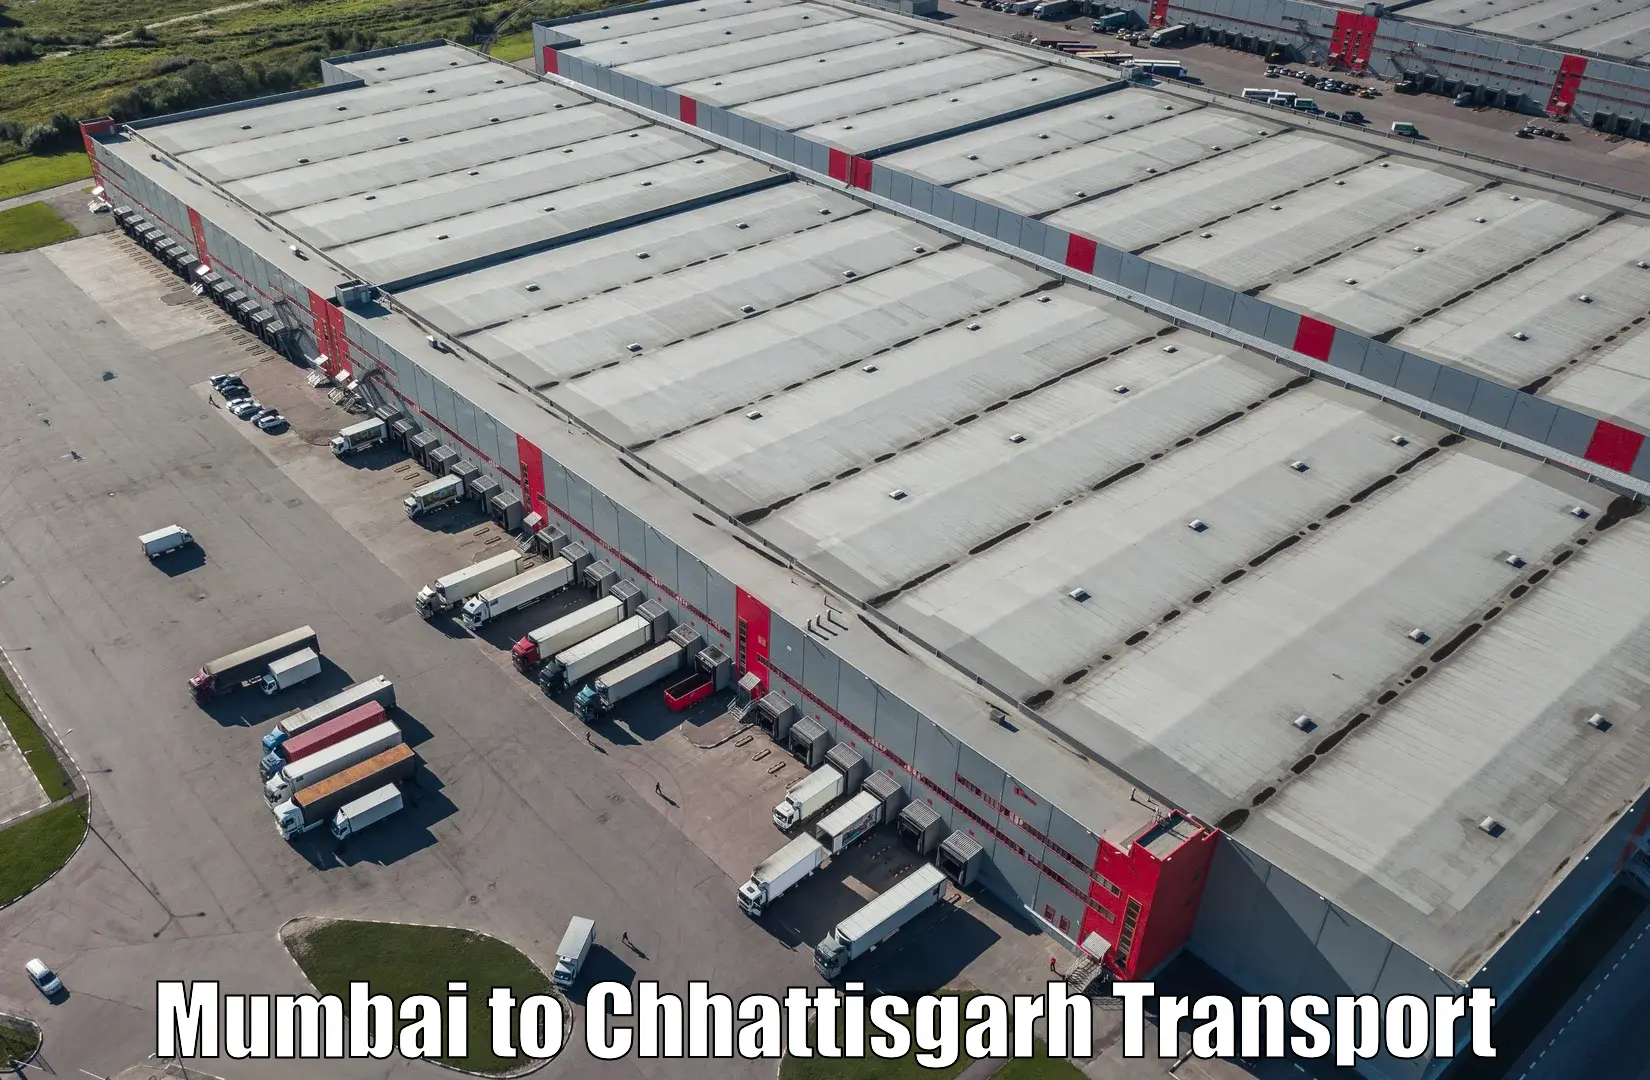 Furniture transport service in Mumbai to NIT Raipur